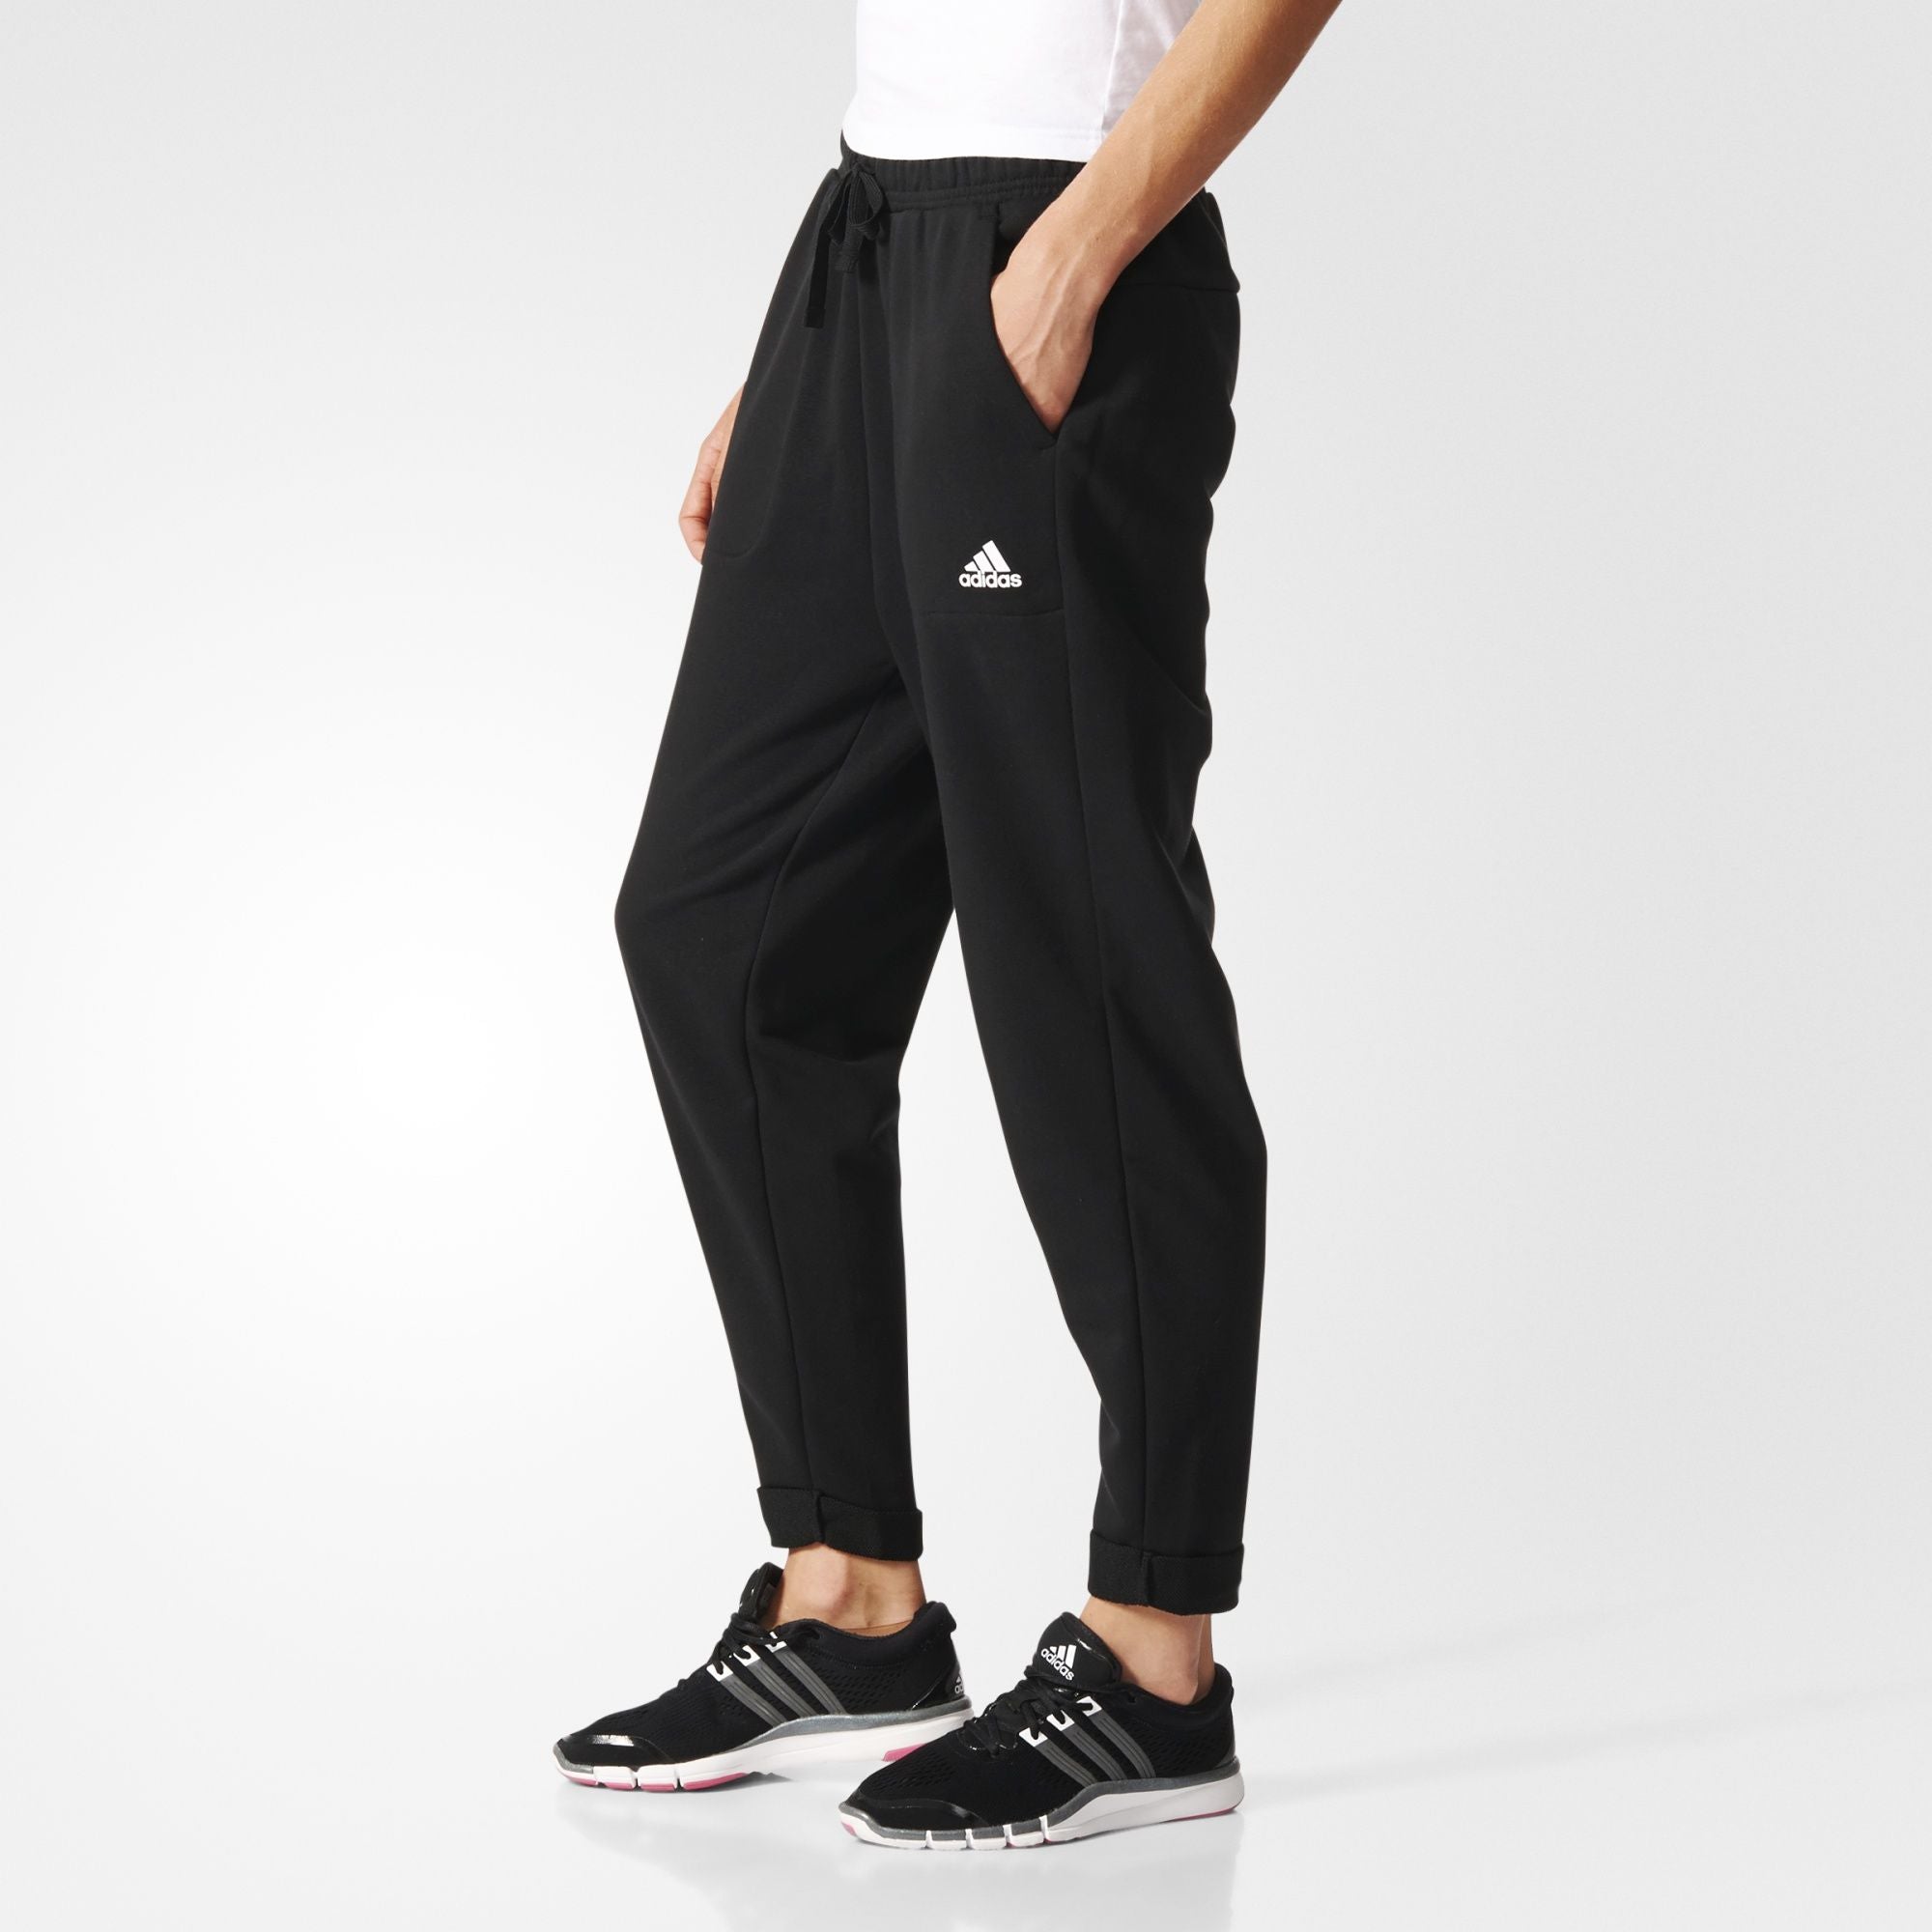 Women's Essentials Boyfriend Pants Black-S97161 – Sports Outlet